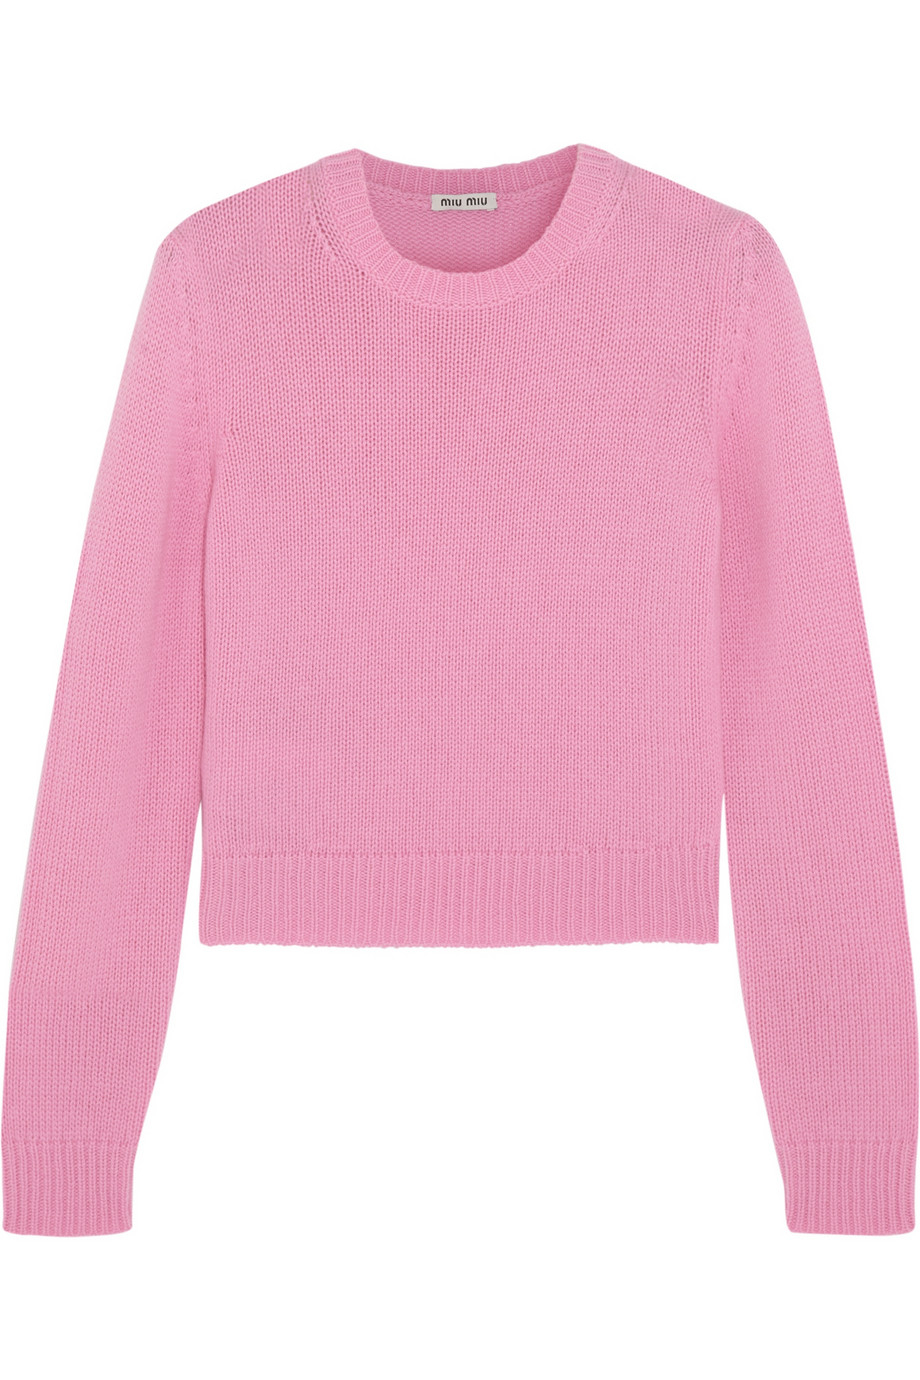 Miu Miu Cropped Cashmere Sweater in Pink - Lyst